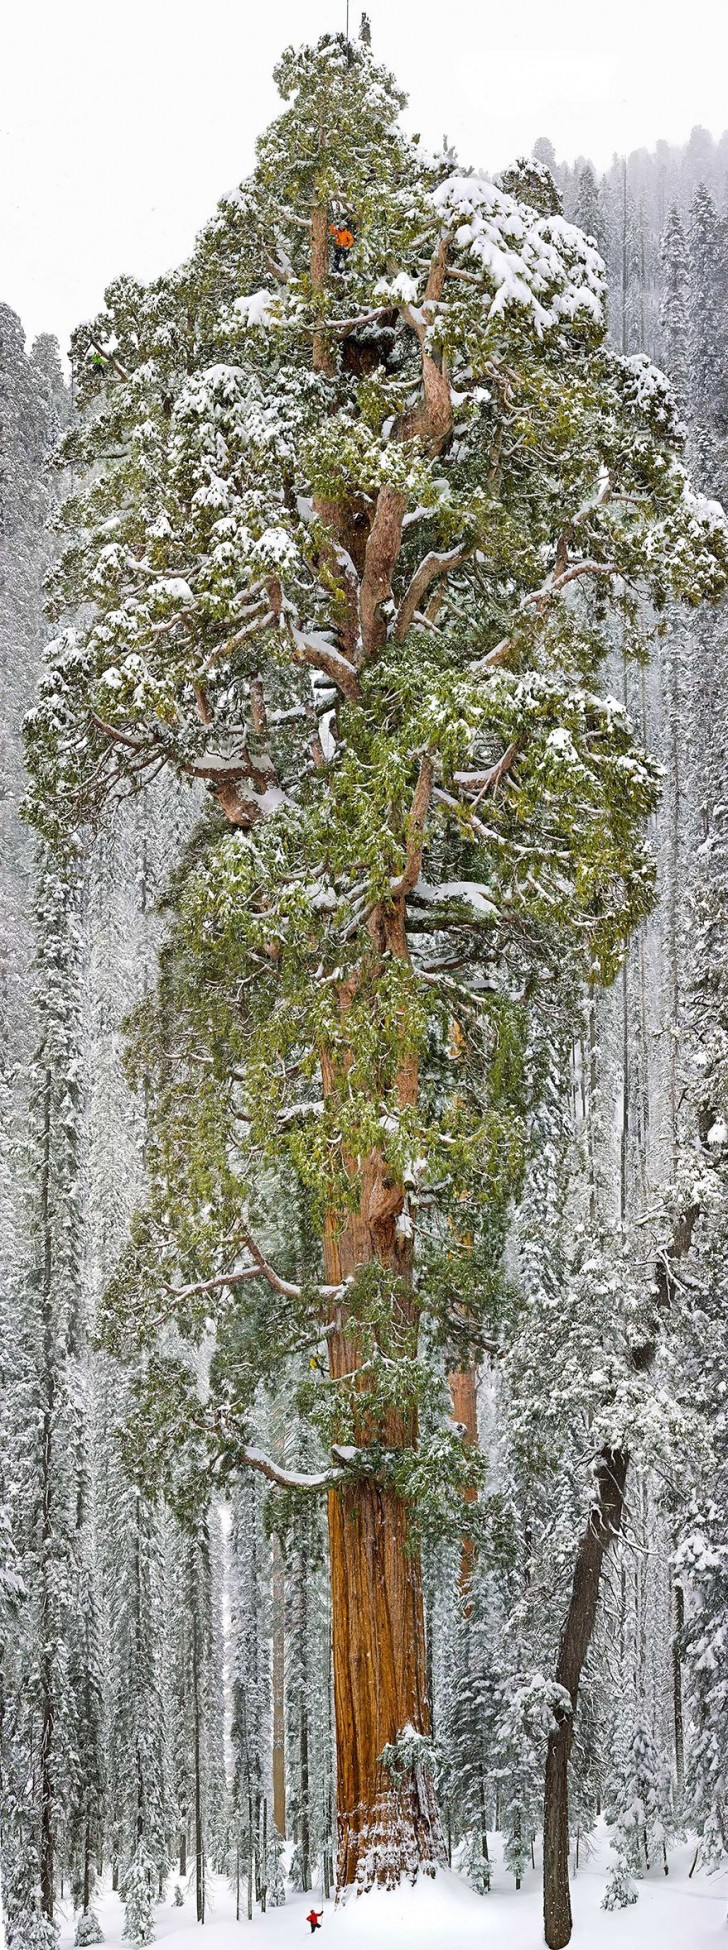 Der drittgrößte Mammutbaum der Welt befindet sich im Sequoia-Nationalpark in Kalifornien. Er hat eine Höhe von 73 Metern und einen Umfang von 28 Metern.